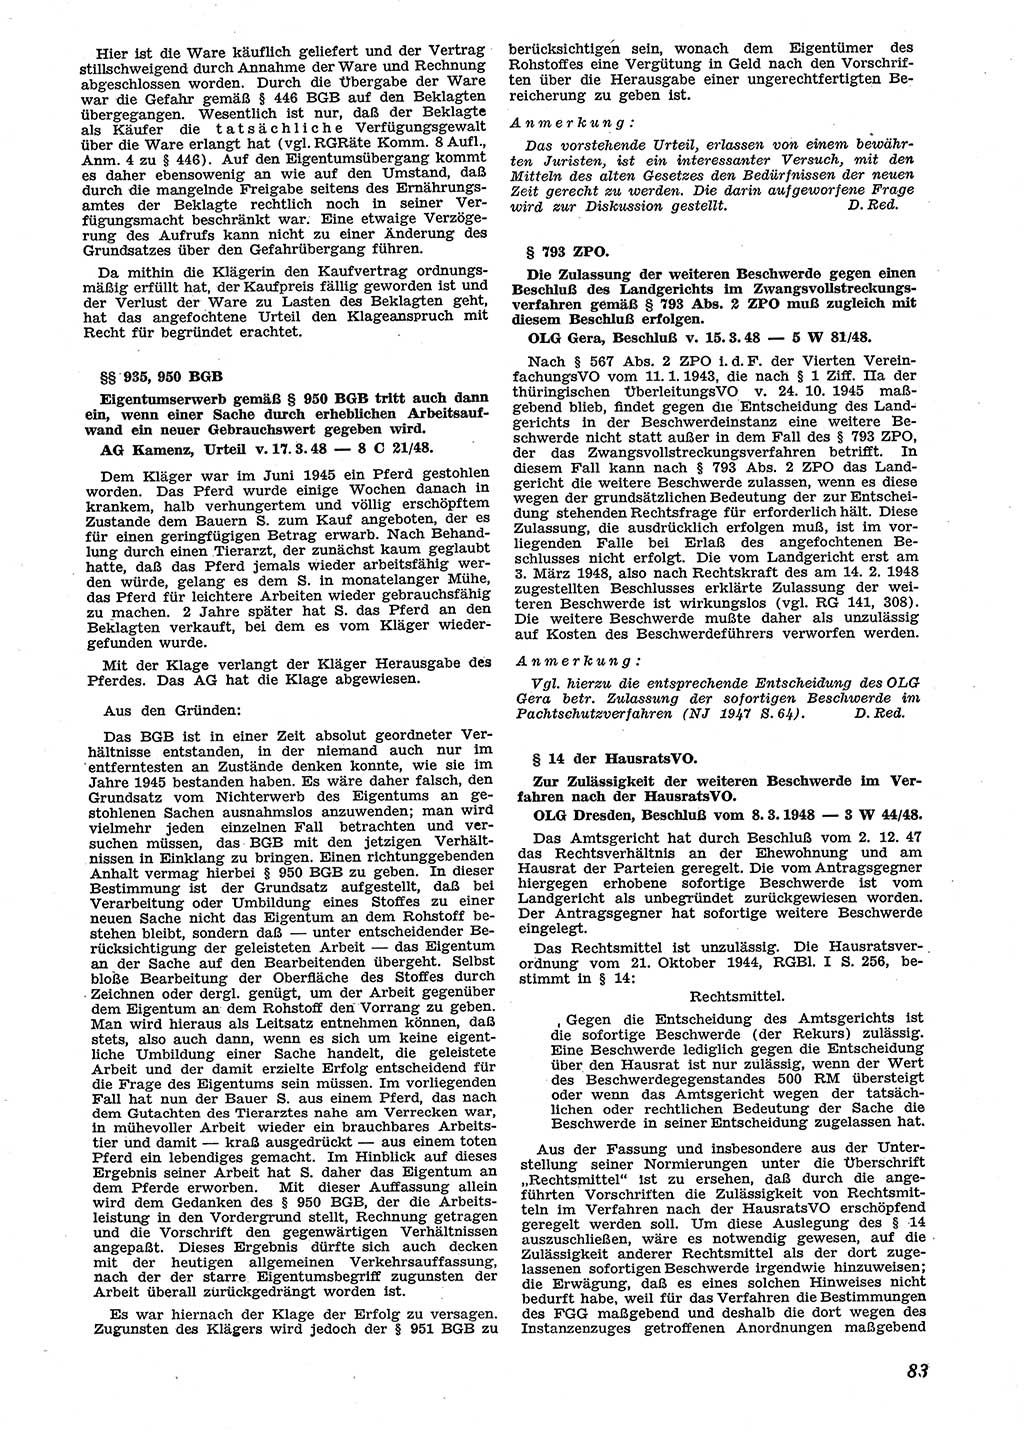 Neue Justiz (NJ), Zeitschrift für Recht und Rechtswissenschaft [Sowjetische Besatzungszone (SBZ) Deutschland], 2. Jahrgang 1948, Seite 83 (NJ SBZ Dtl. 1948, S. 83)